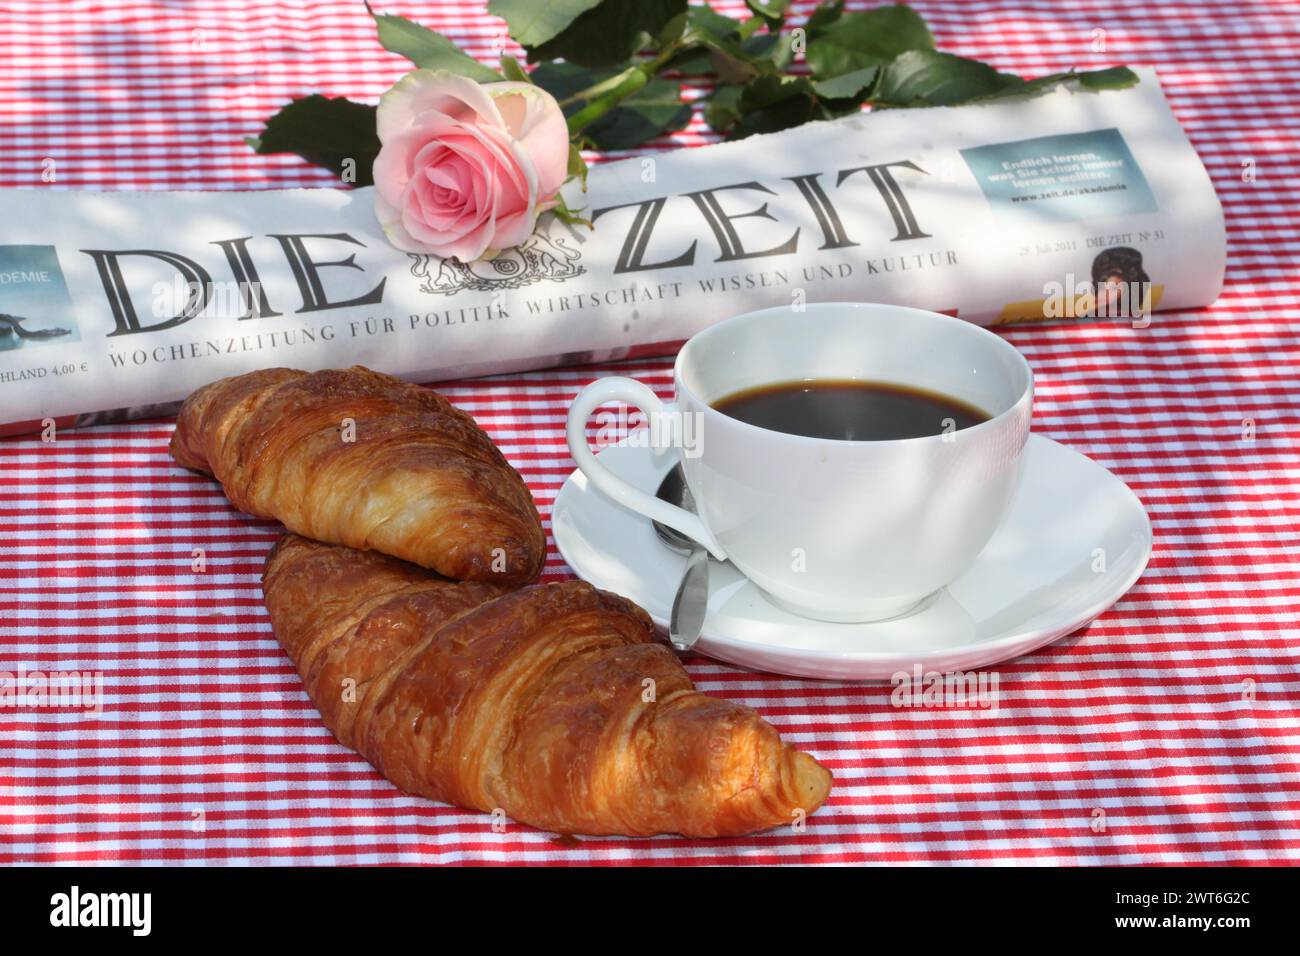 Ein traditionelles Fruehstueck mit Kaffee und croissants auf einer rot-karierten Tischdecke mit Zeitung und Rose im Hintergrund, Deutschland Banque D'Images